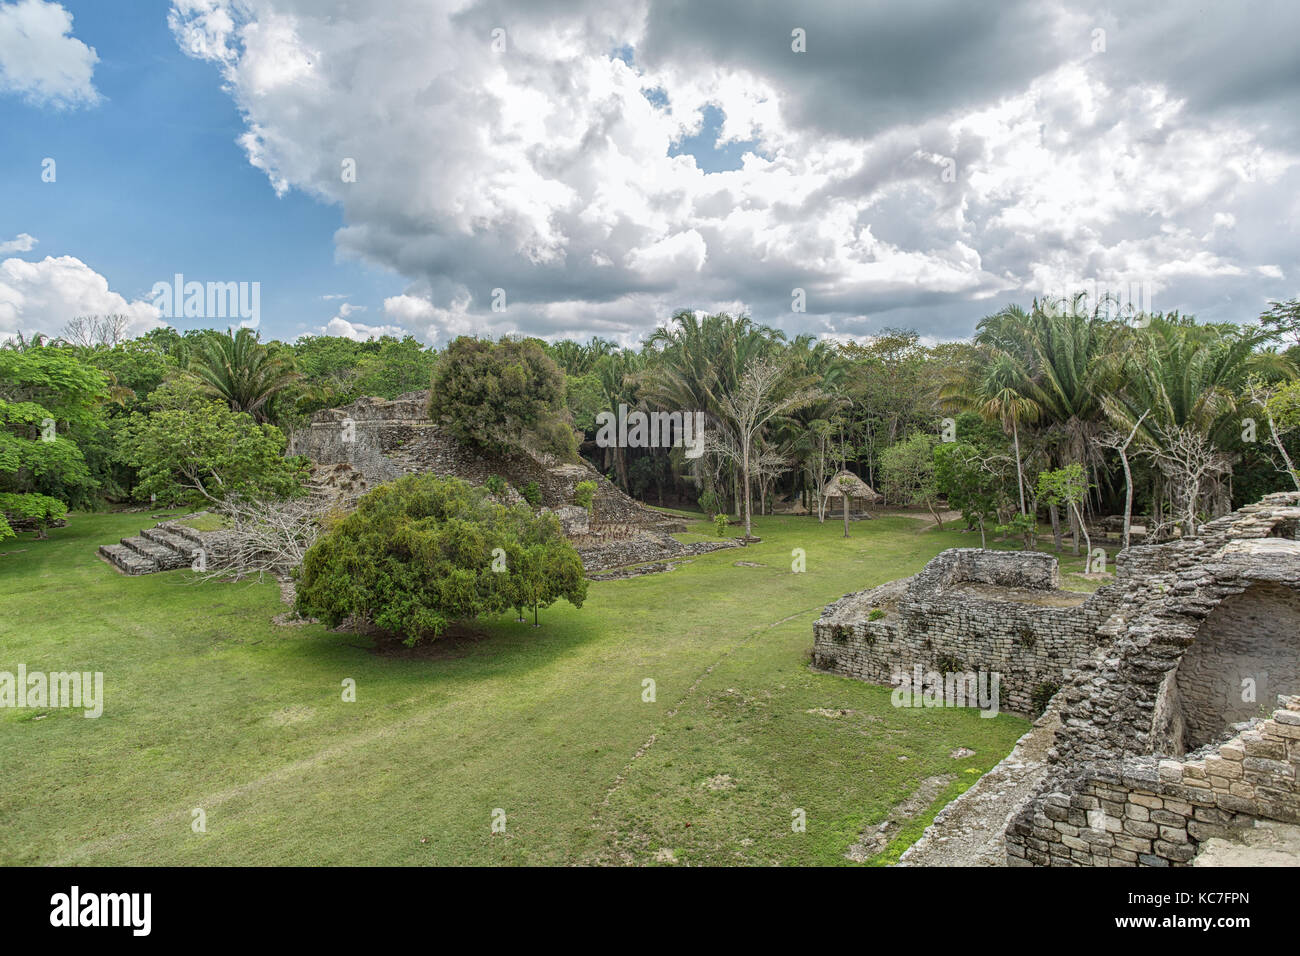 Kohunlich maya sito archeologico di quintana roo mexico Foto Stock